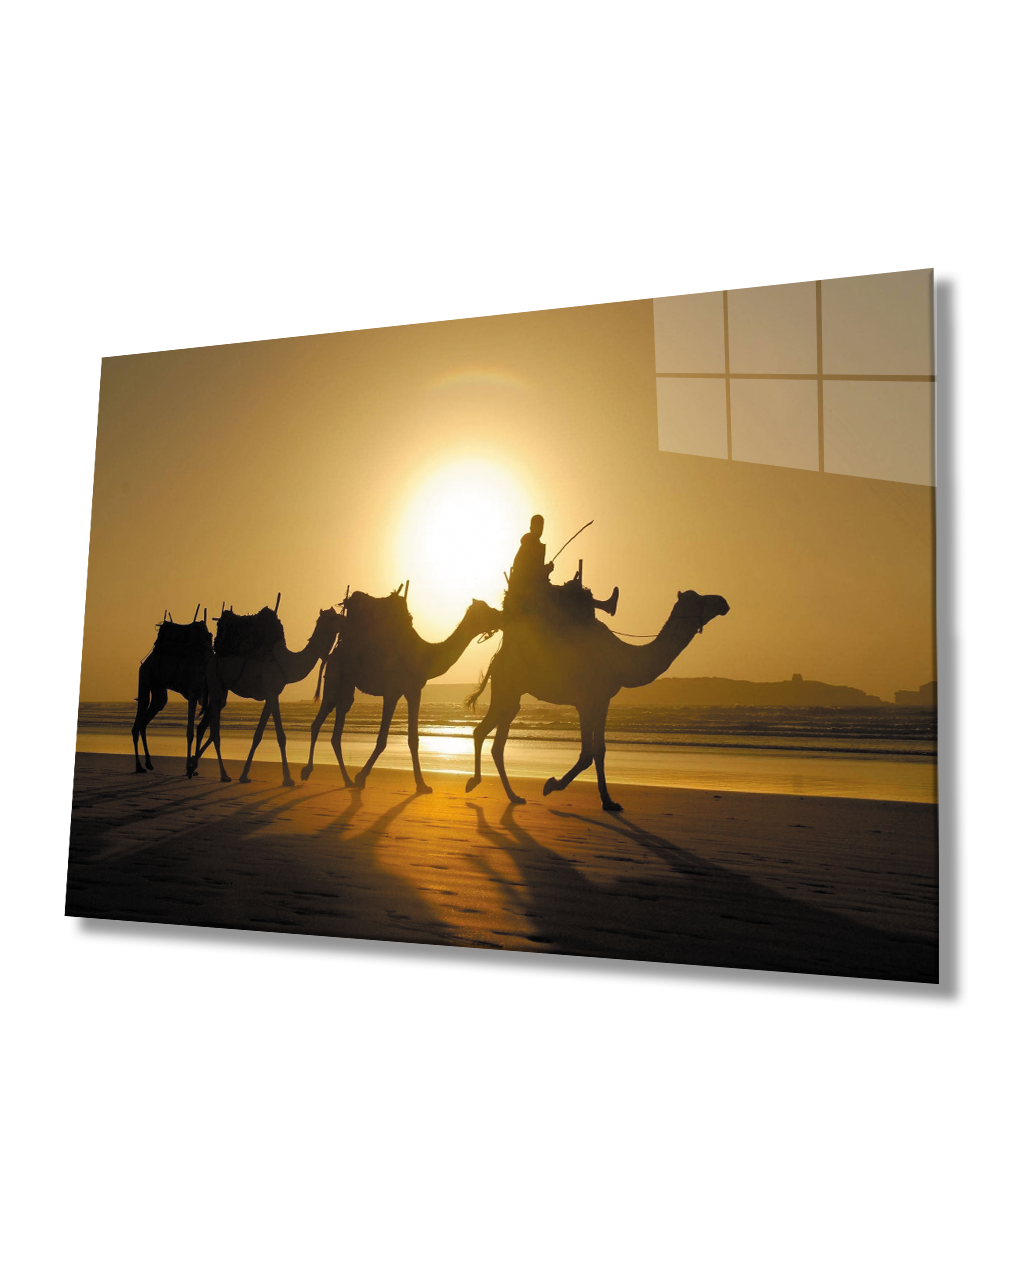 Gün Batımı Sahra Deve  Cam Tablo  4mm Dayanıklı Temperli Cam Sunset Sahara Camel Glass Table 4mm Durable Tempered Glass